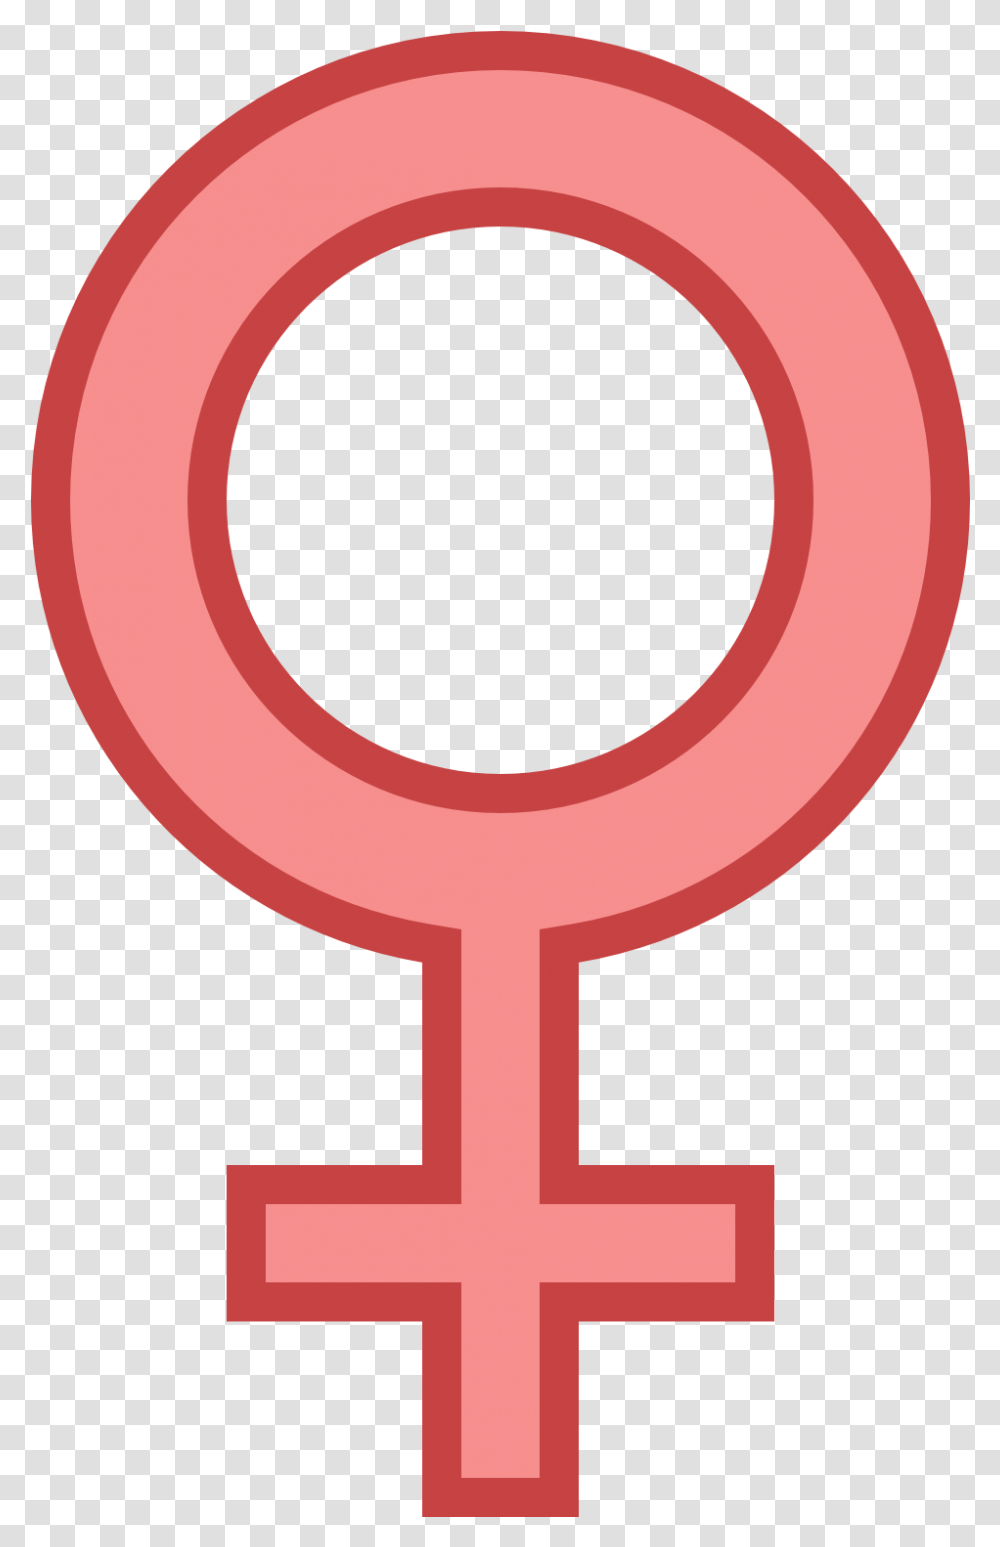 Female Gender Sign, Cross, Life Buoy Transparent Png